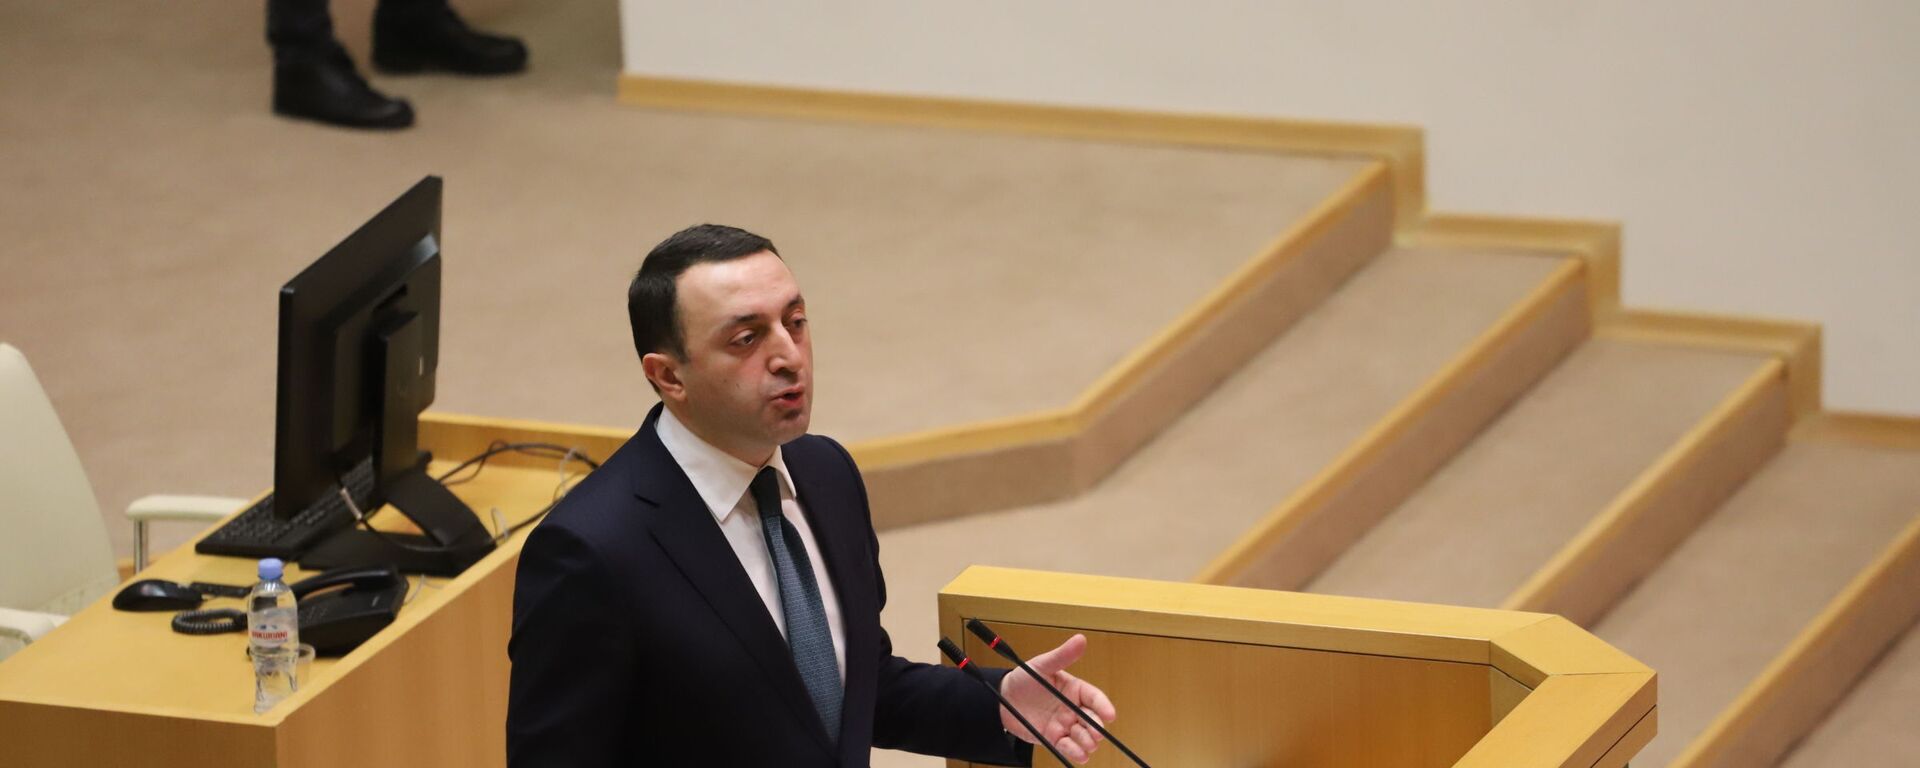 Ираклий Гарибашвили выступает в парламенте 22 февраля 2021 года - Sputnik Грузия, 1920, 12.05.2021